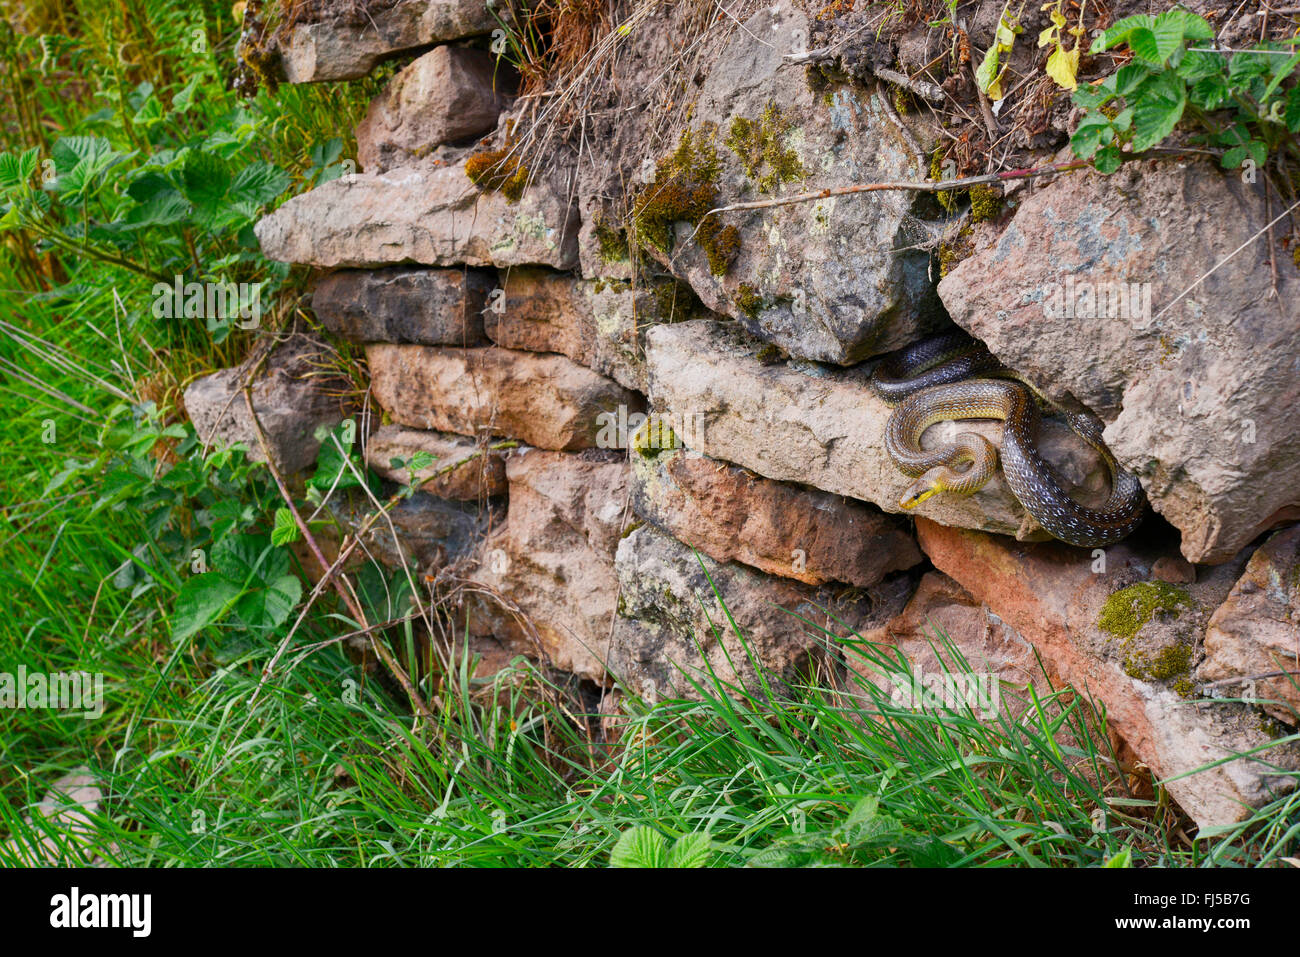 Aesculapian snake (Elaphe longissima, Zamenis longissimus), un bain de soleil dans un mur sec, l'Allemagne, l'Odenwald, Hirschhorn am Neckar Banque D'Images